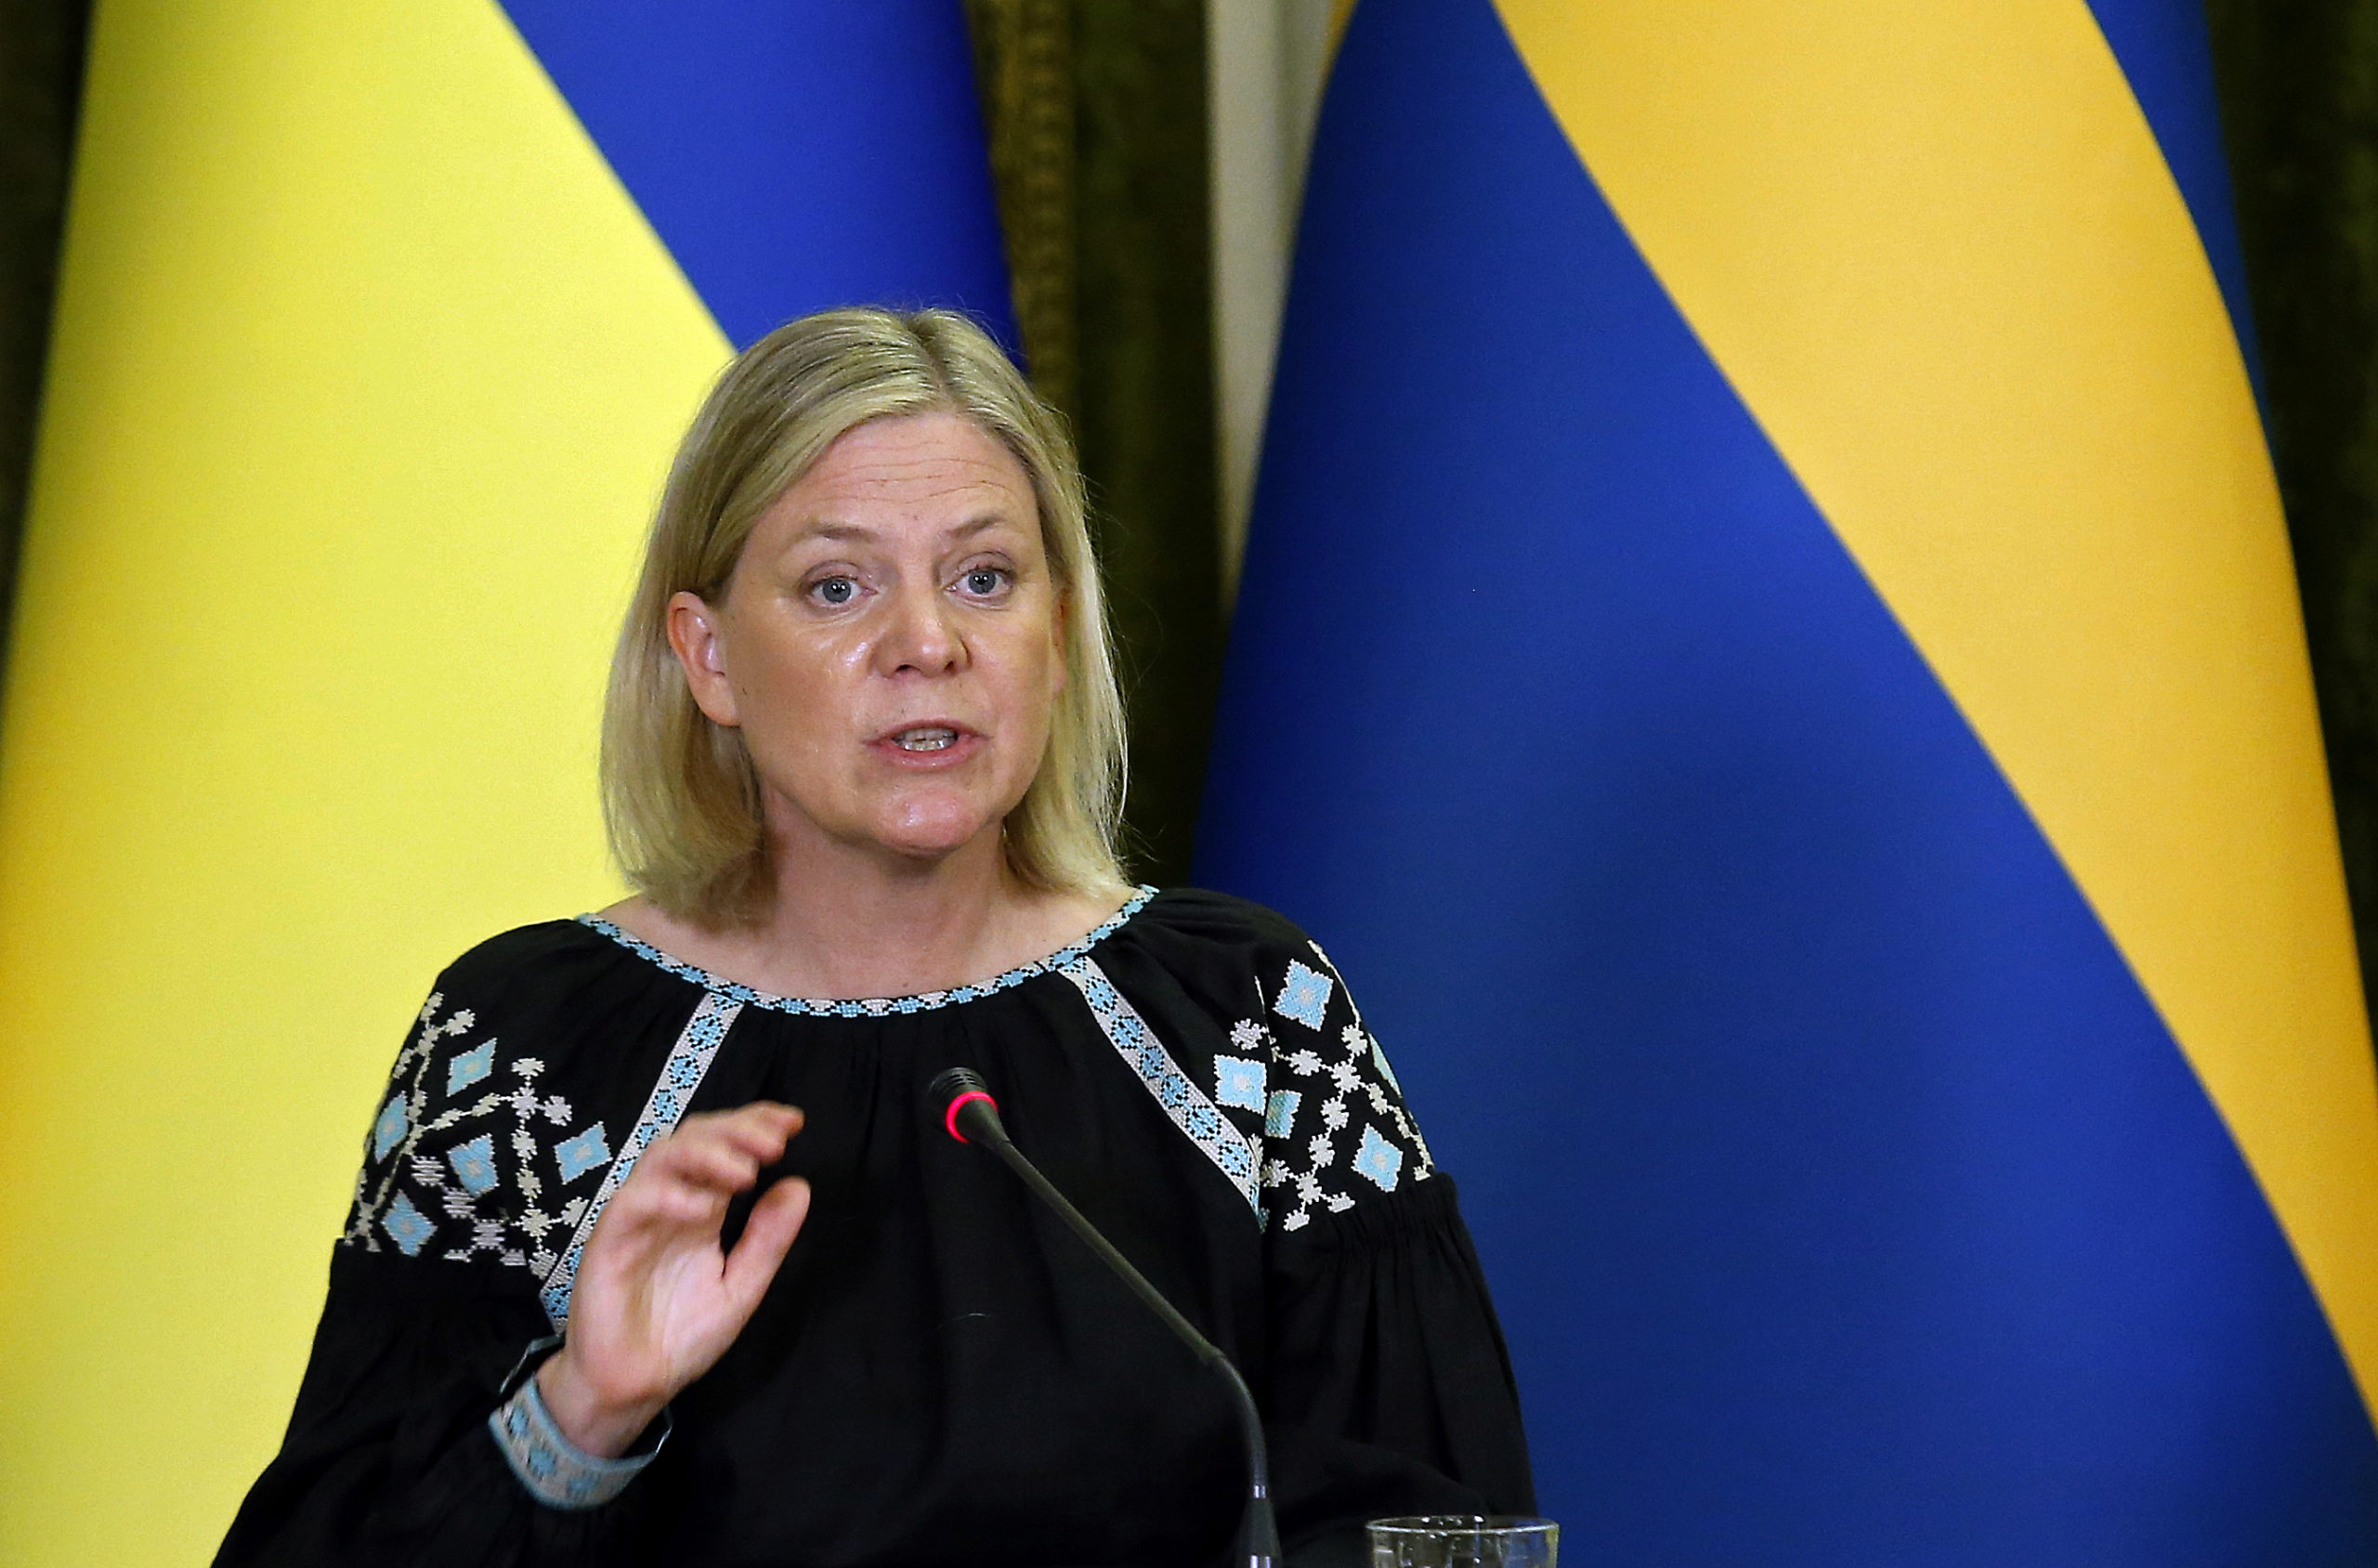 Suecia y Finlandia se convierten en miembros 'de facto' de la OTAN